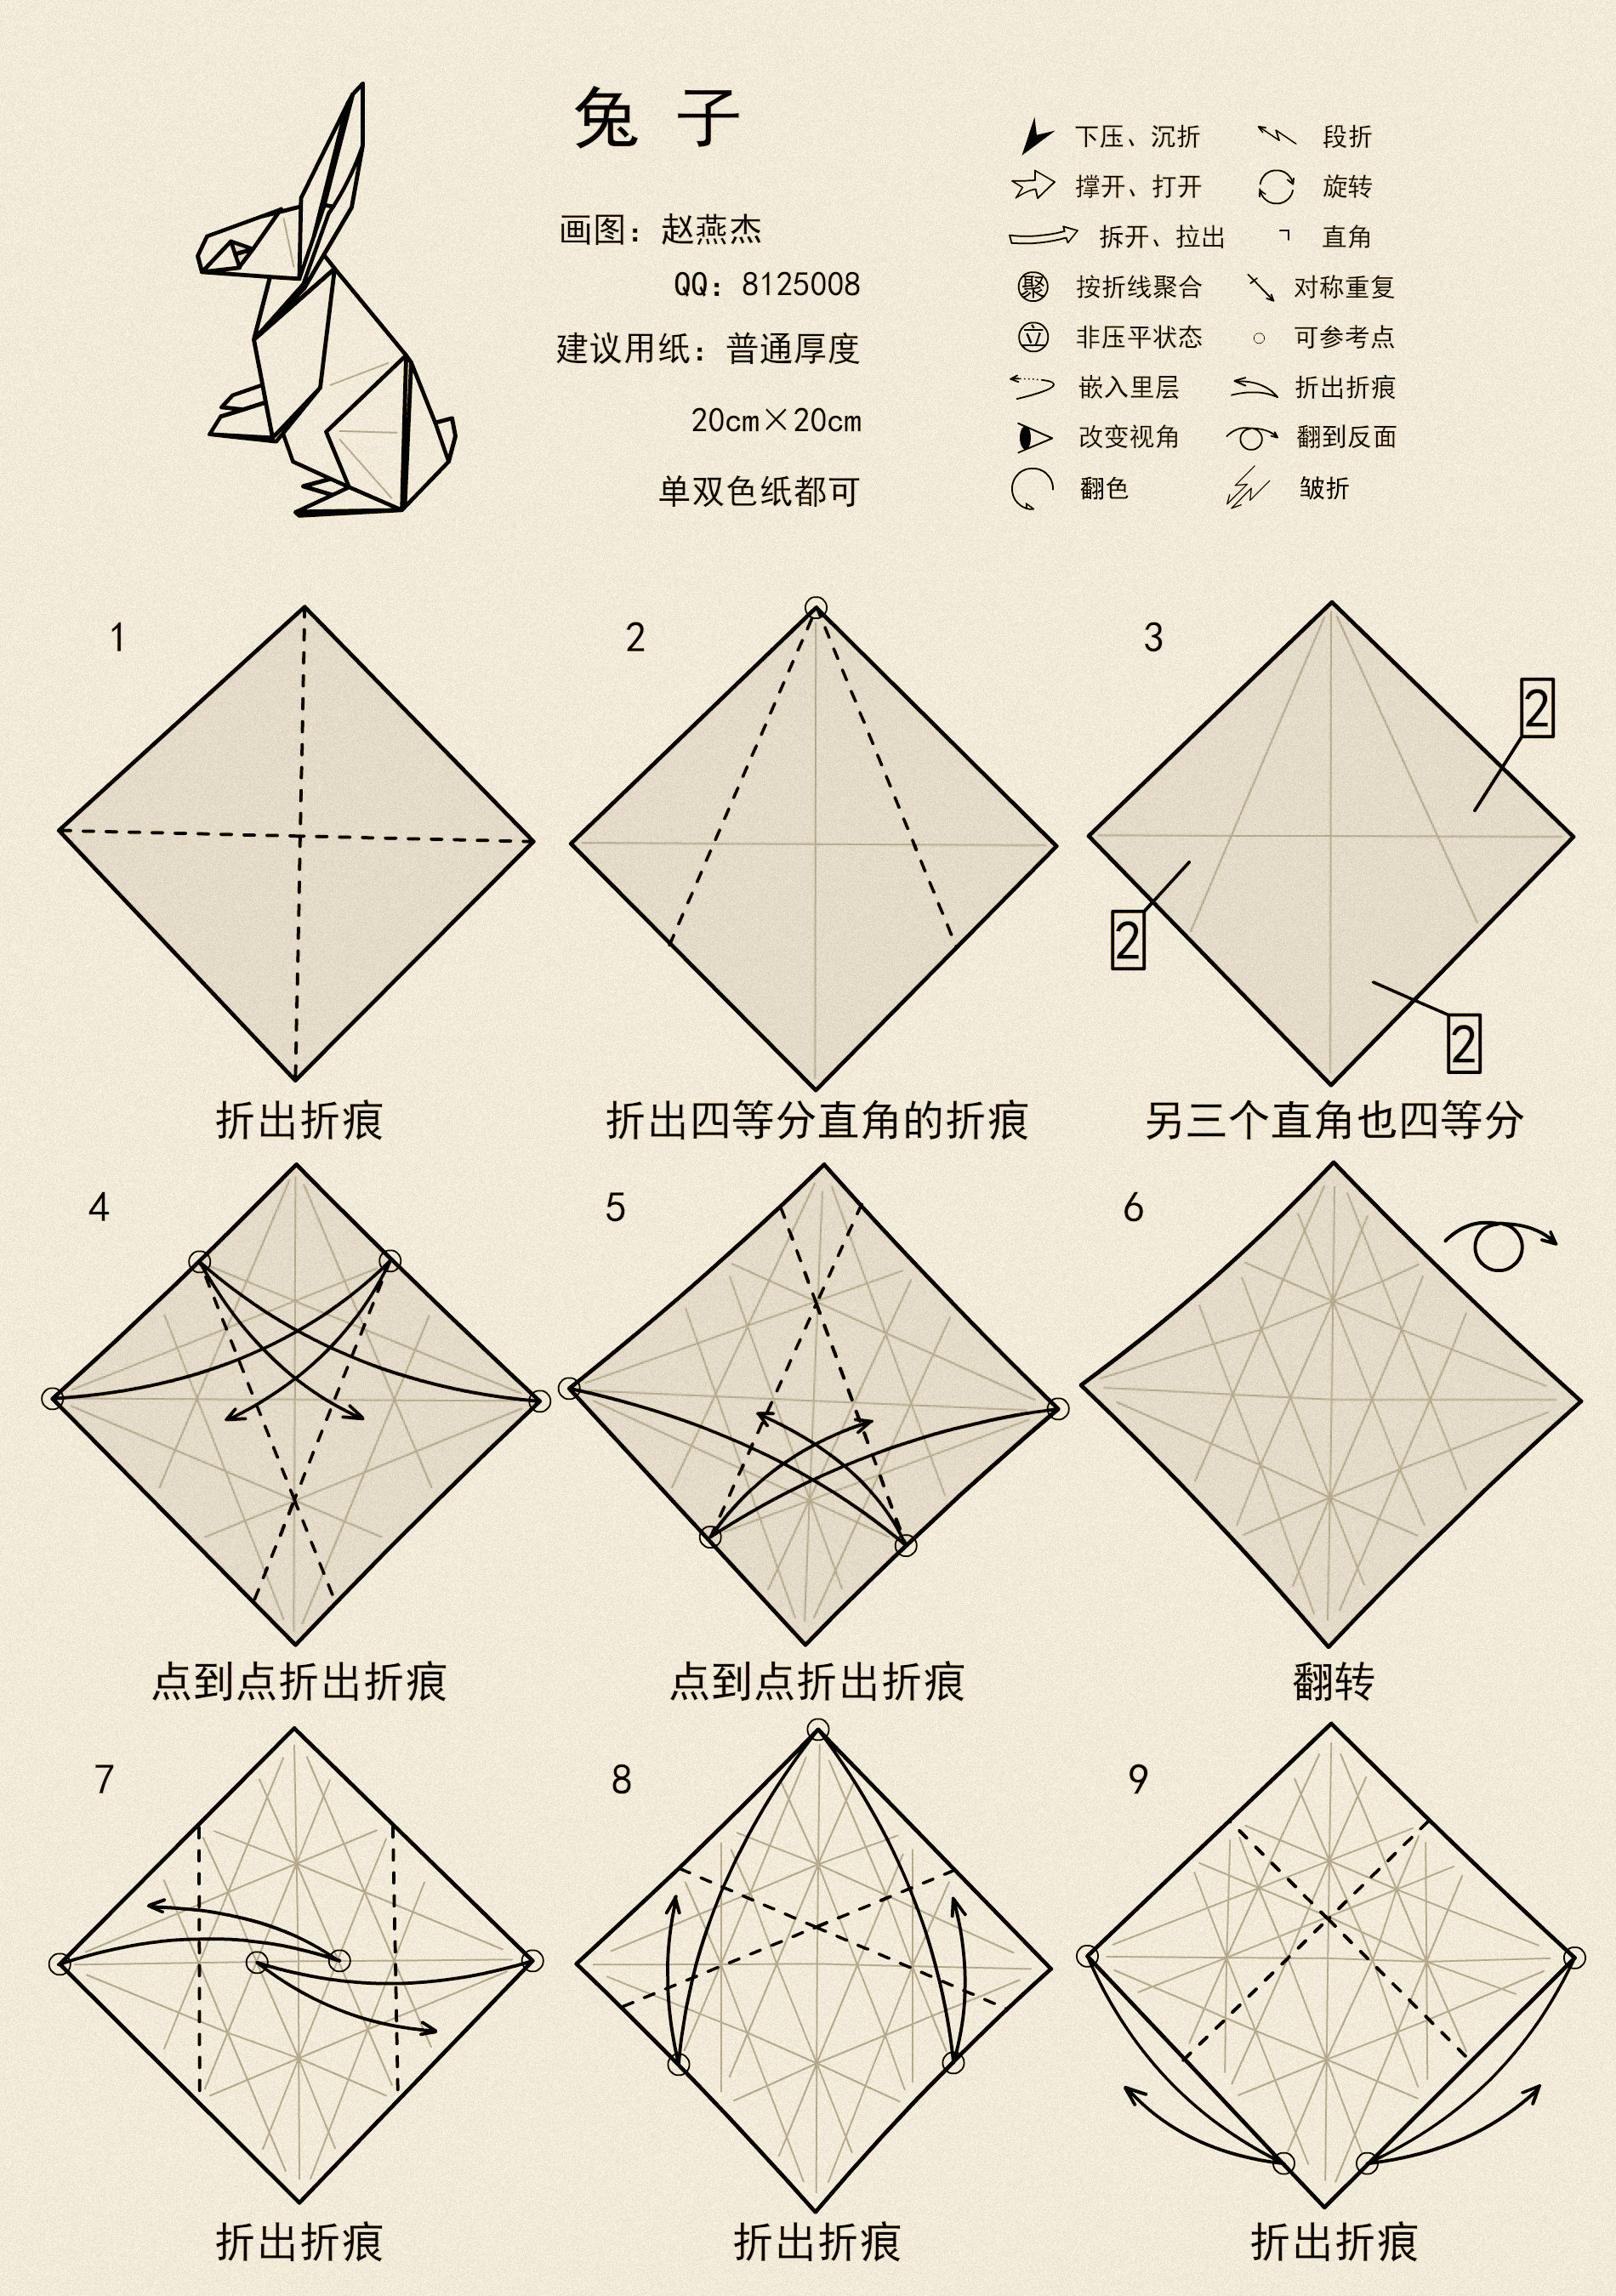 折纸小兔子简单的叠法图片